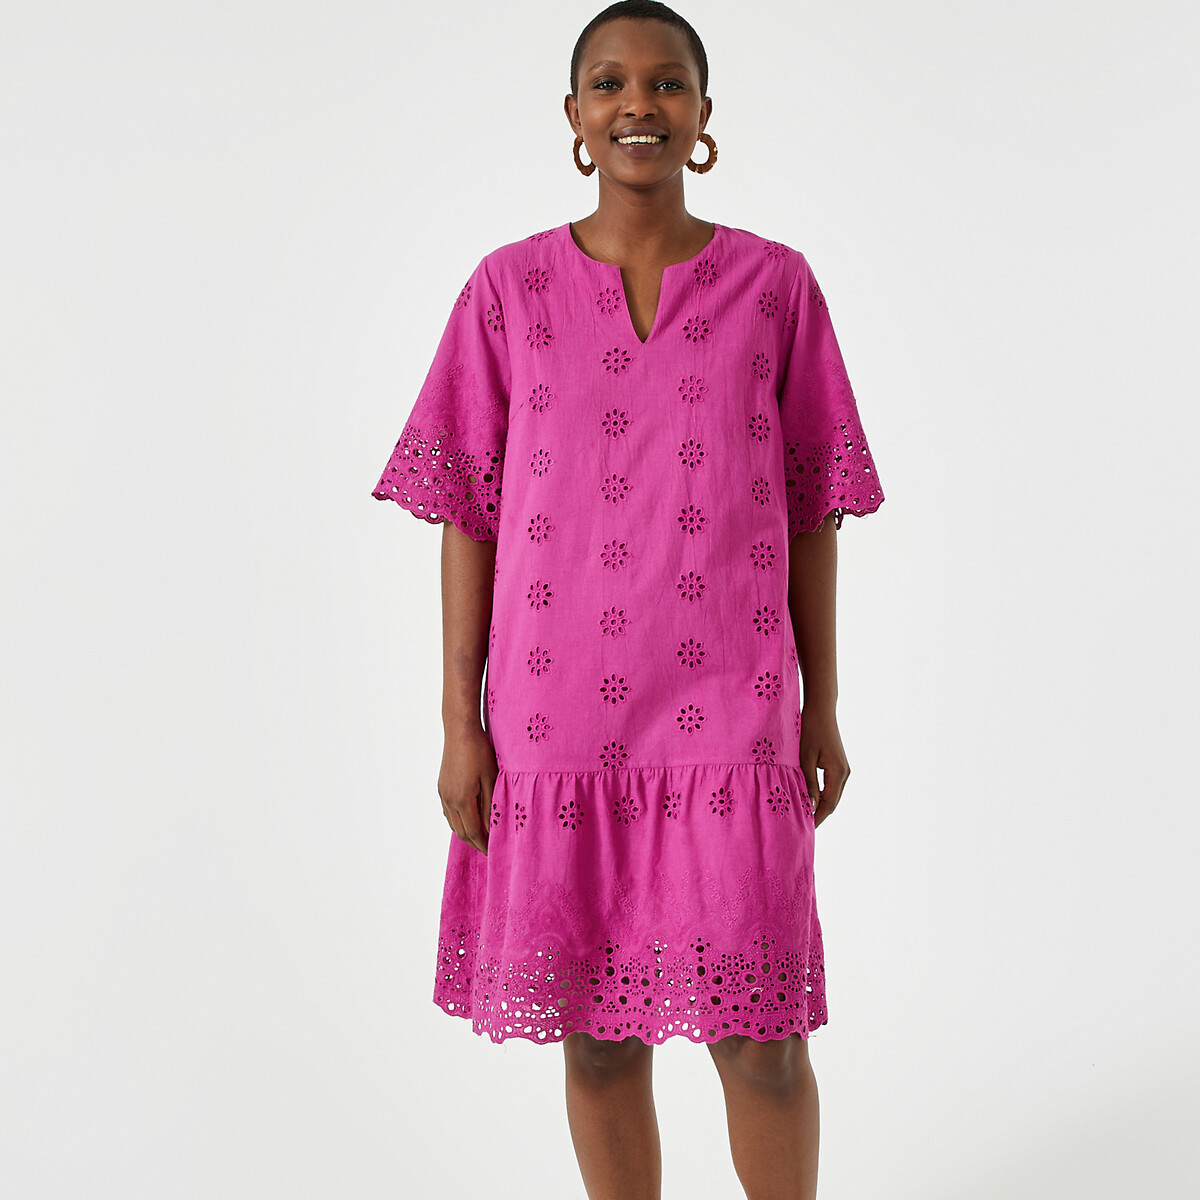 Платье-миди расклешенное с вышивкой короткими рукавами 56 розовый платье laredoute платье богемное с воланами из английской вышивки 44 бежевый